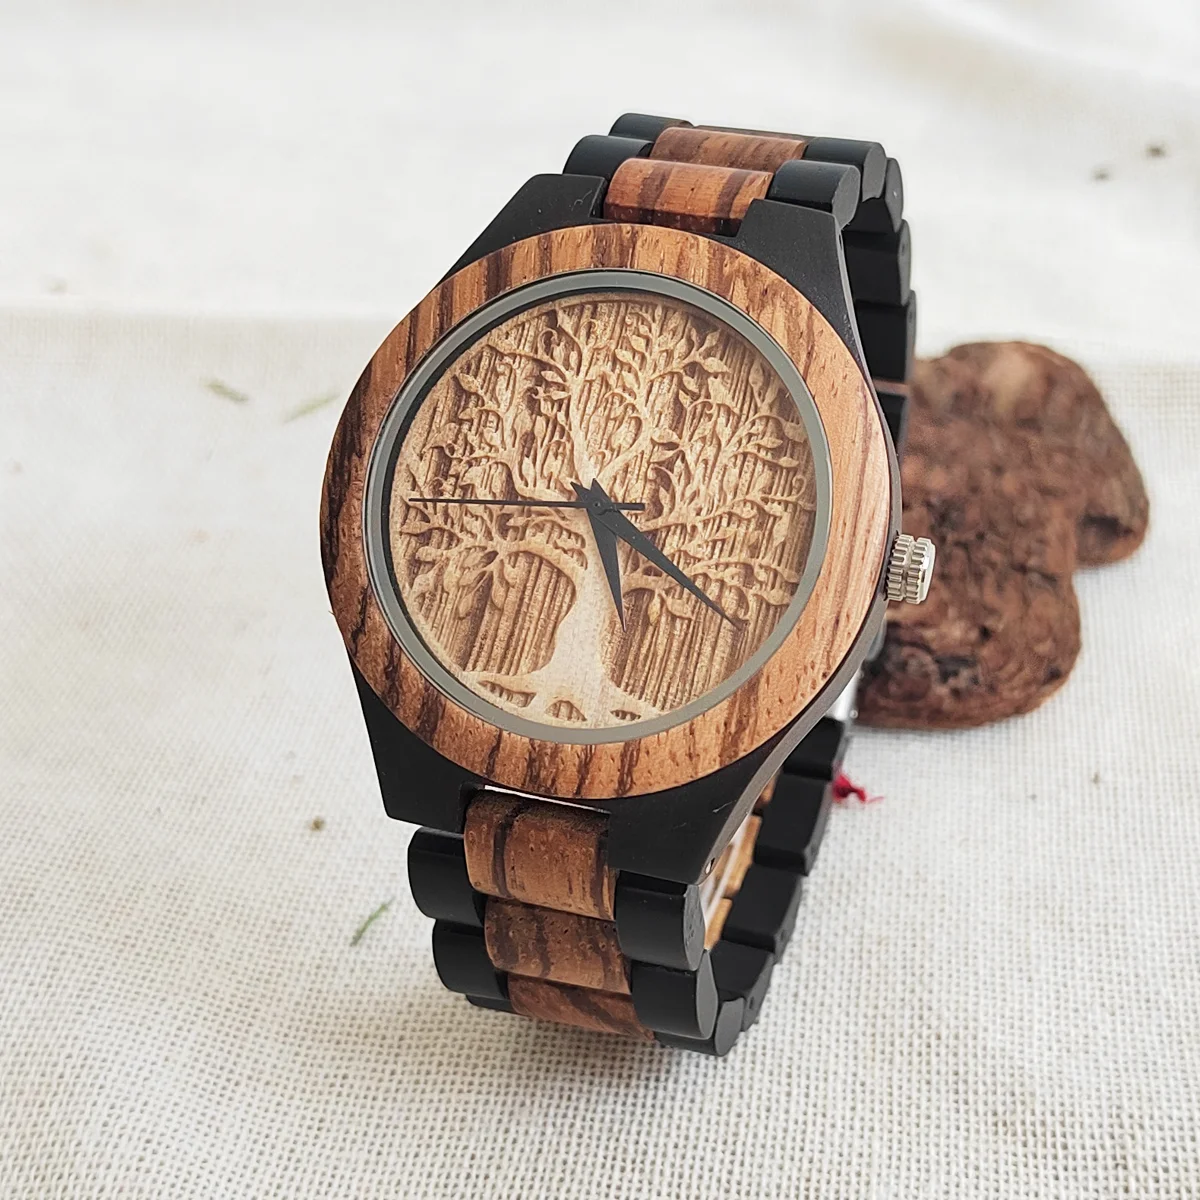 

Часы наручные Lucky Tree мужские с хронографом, модные кварцевые, с натуральным деревом